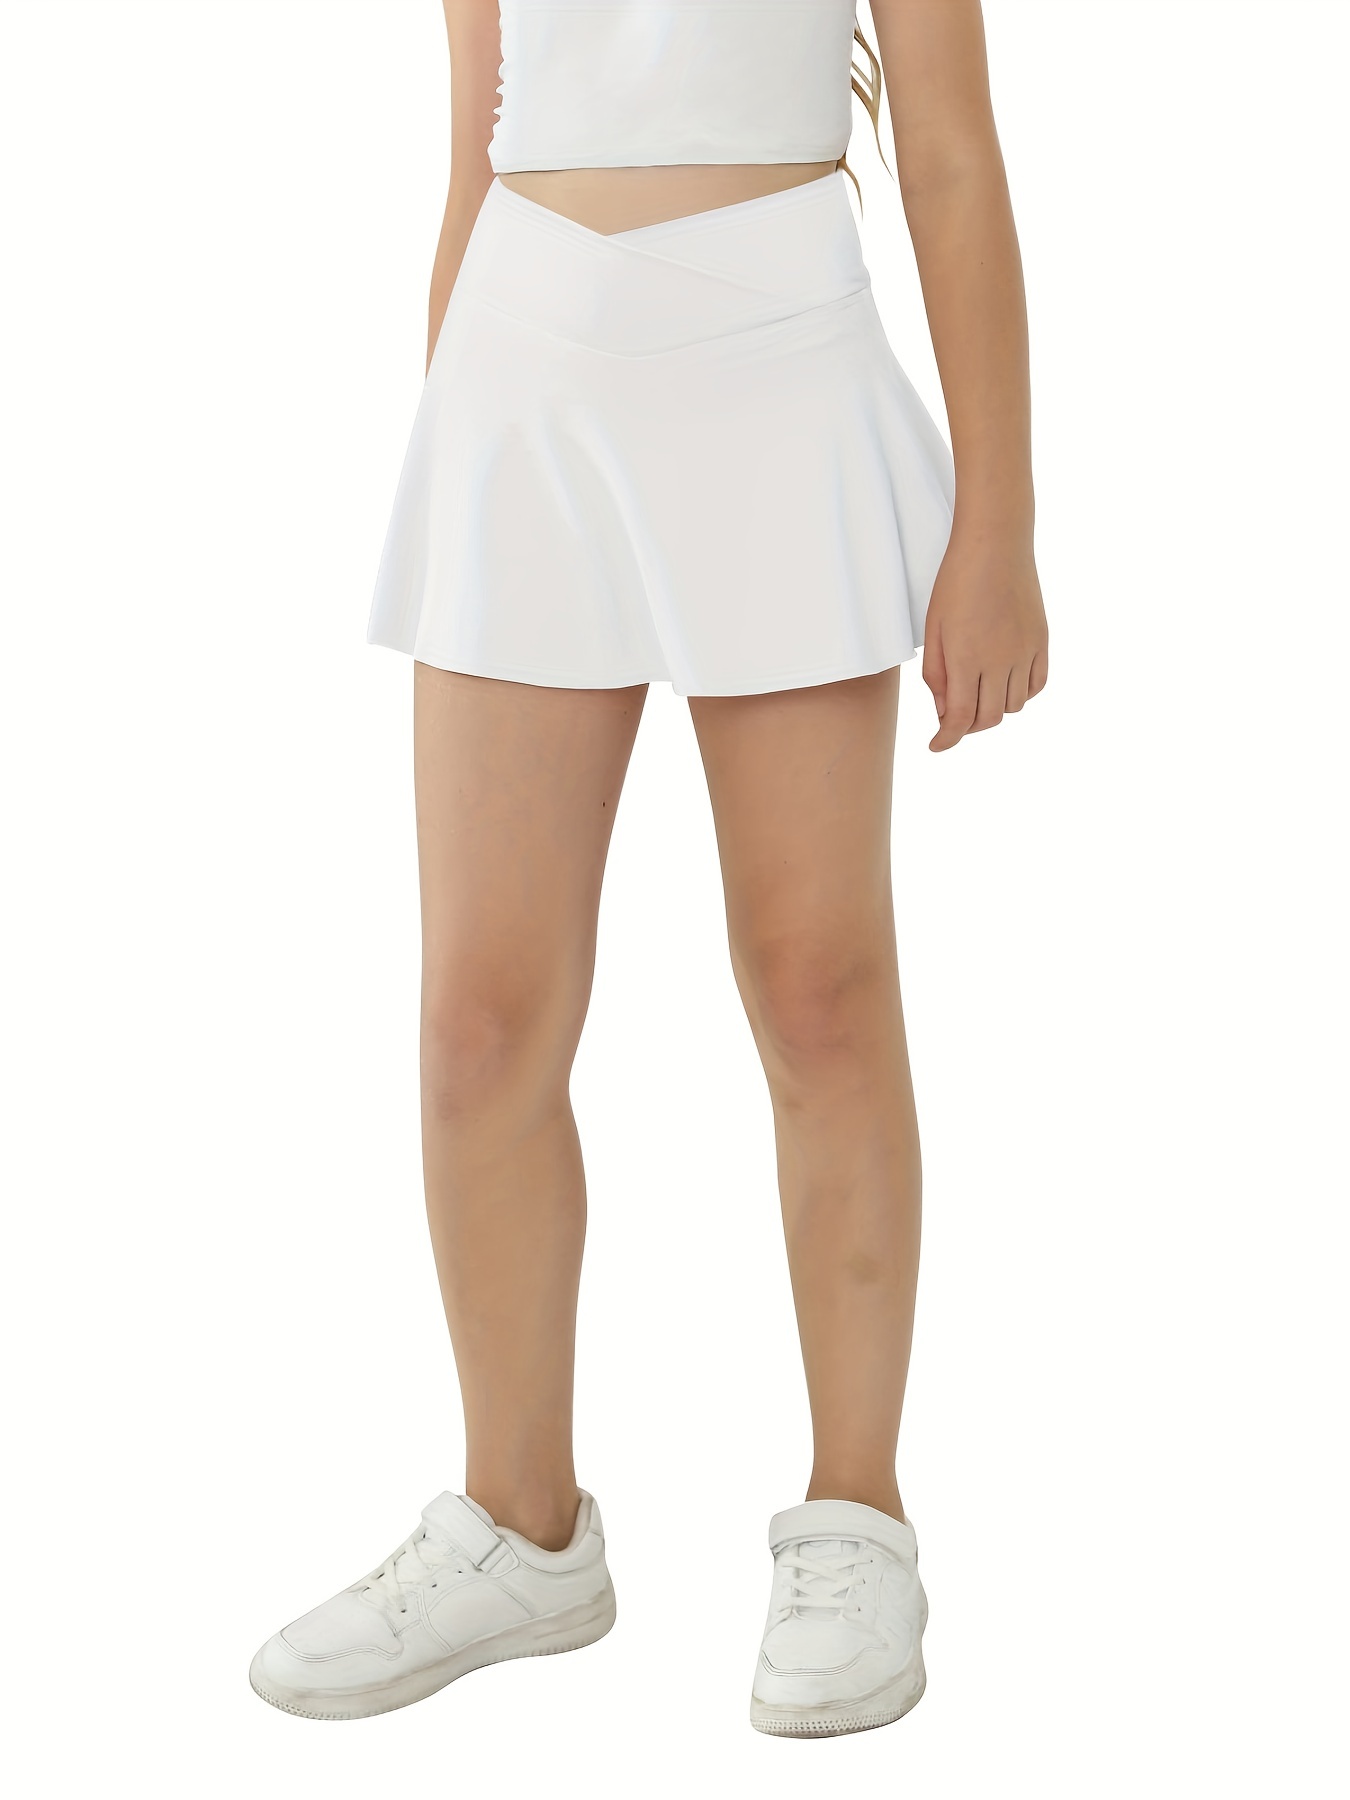 Workout Skirts & Dresses, Tennis & Golf Skirts